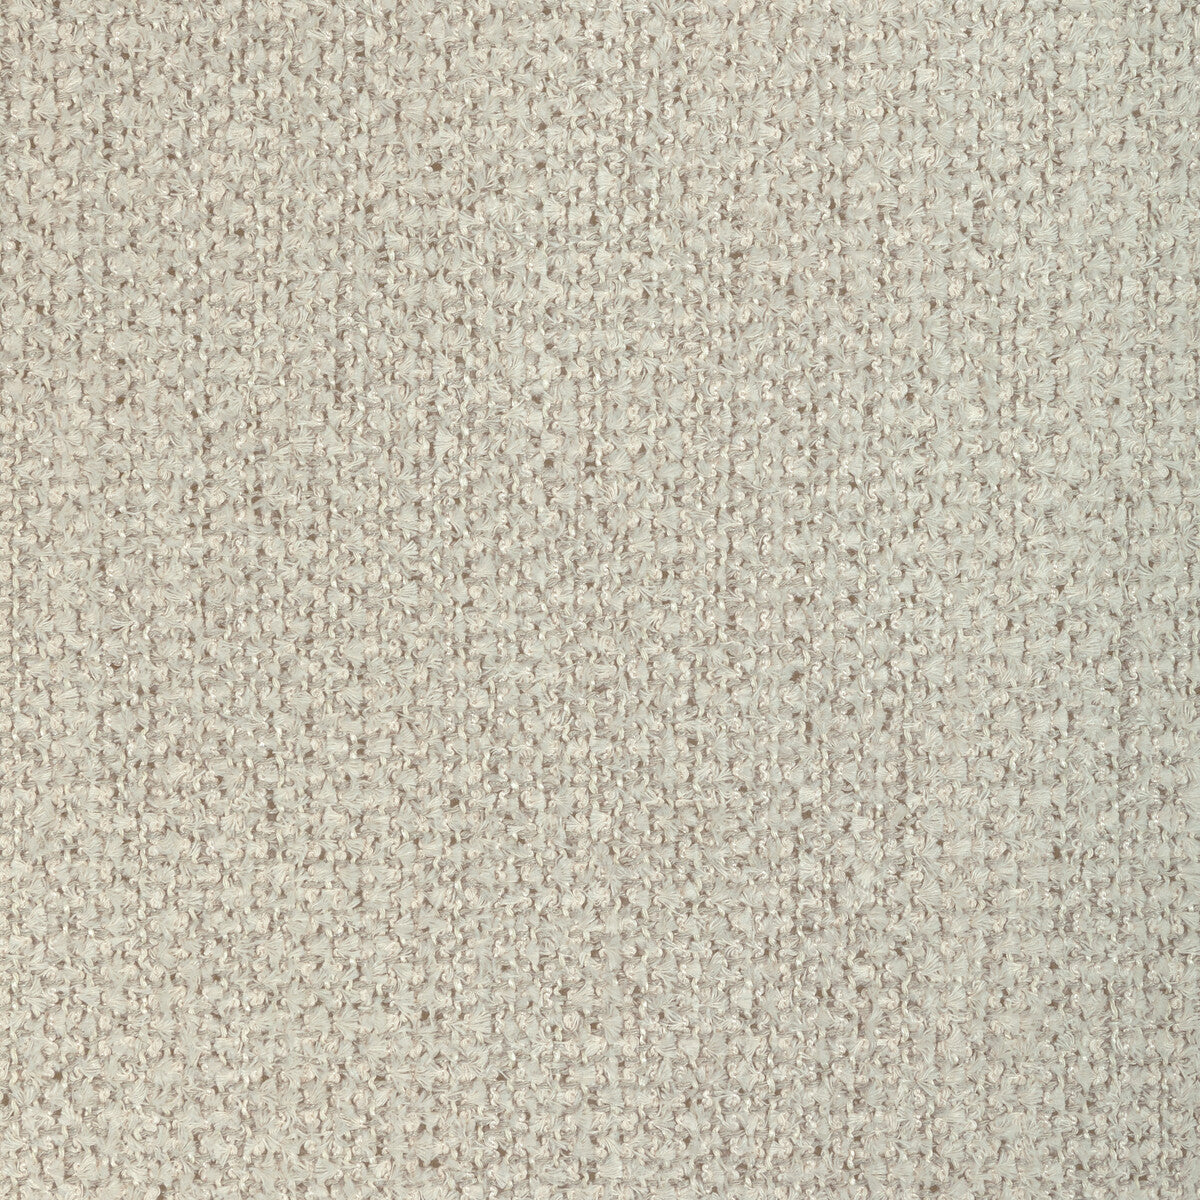 Kravet Design fabric in 4906-11 color - pattern 4906.11.0 - by Kravet Design